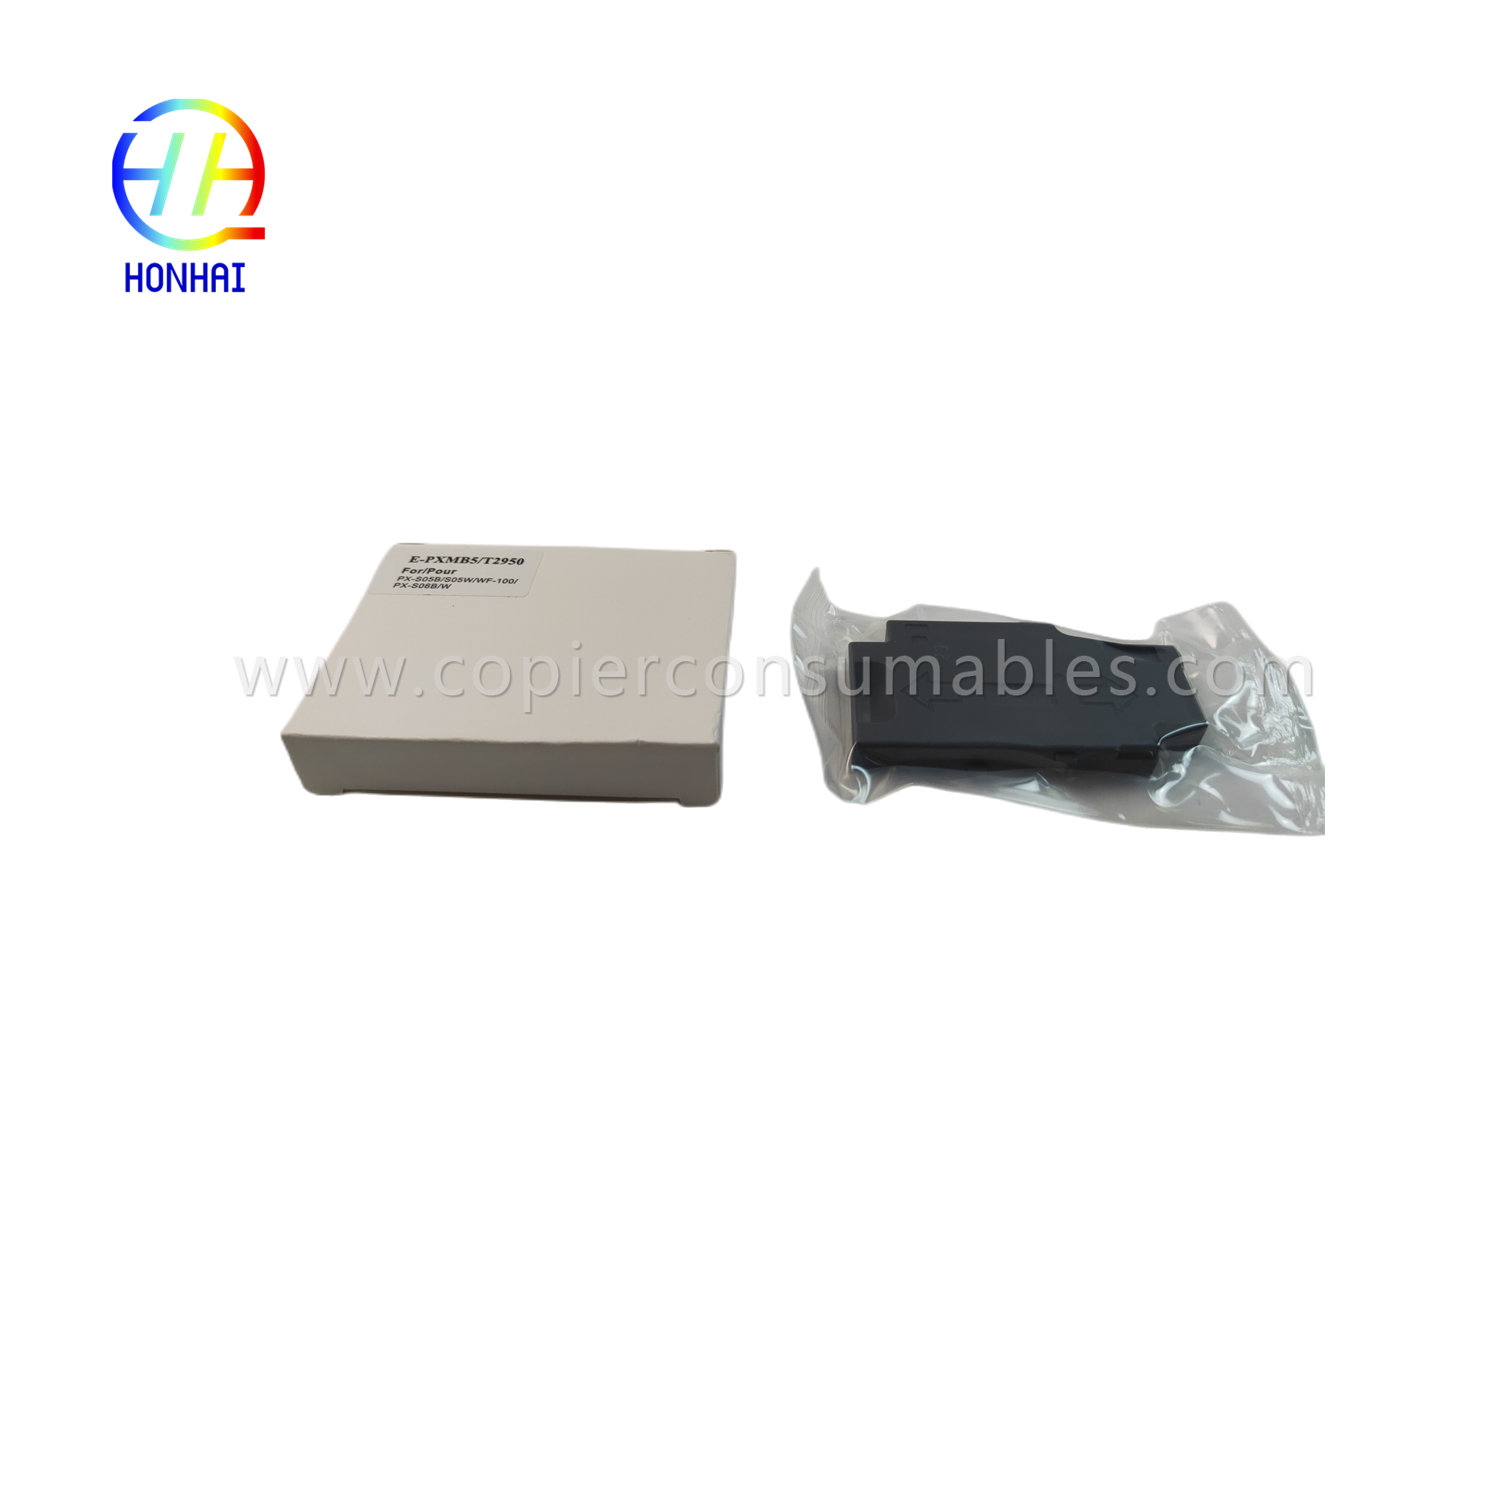 Underhållslåda för Epson wf100 T295000